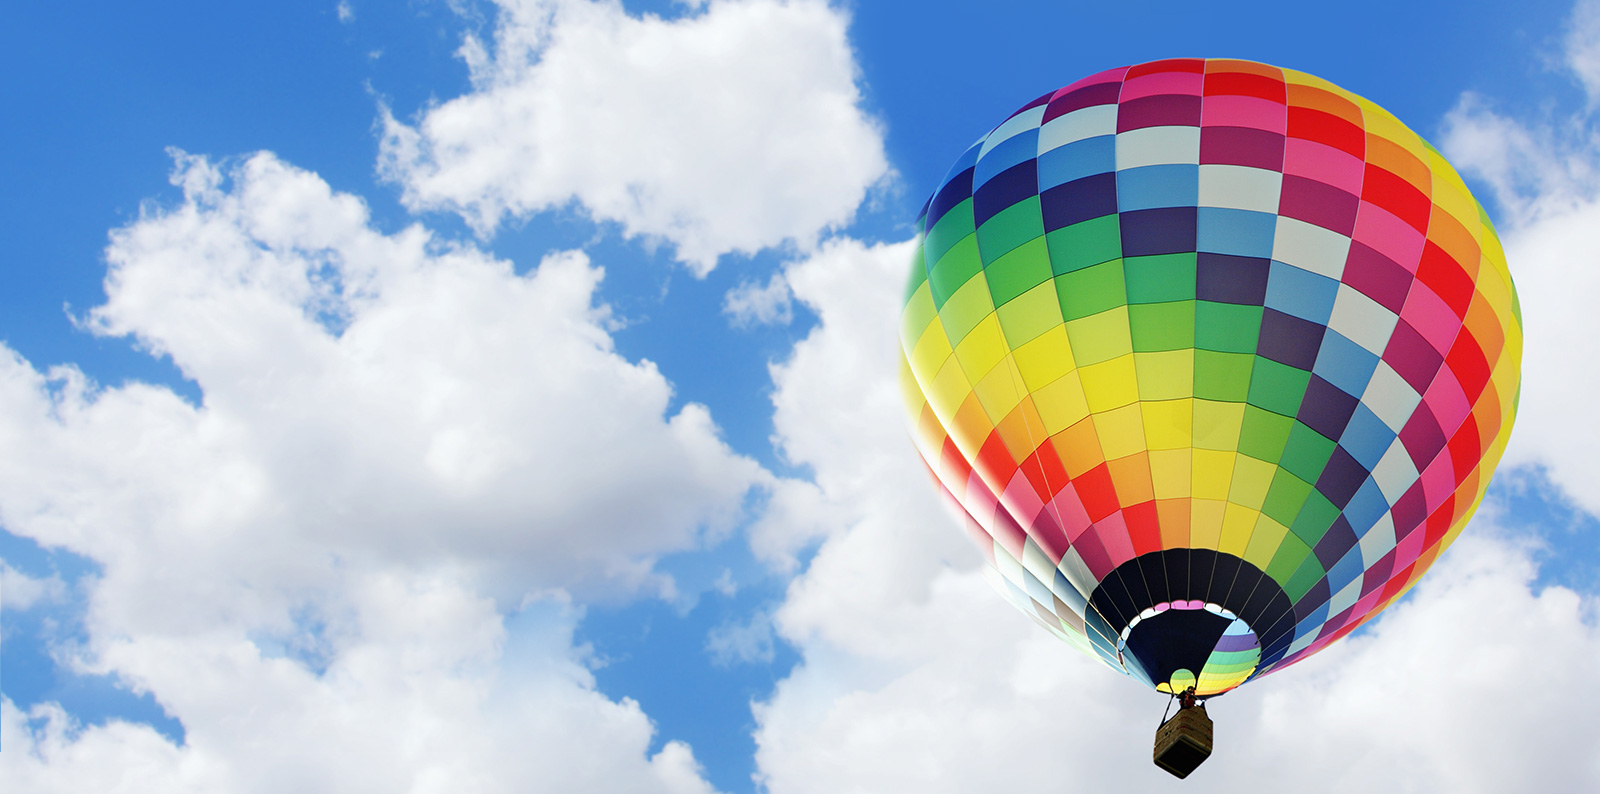 Comment choisir un vol en montgolfière ?